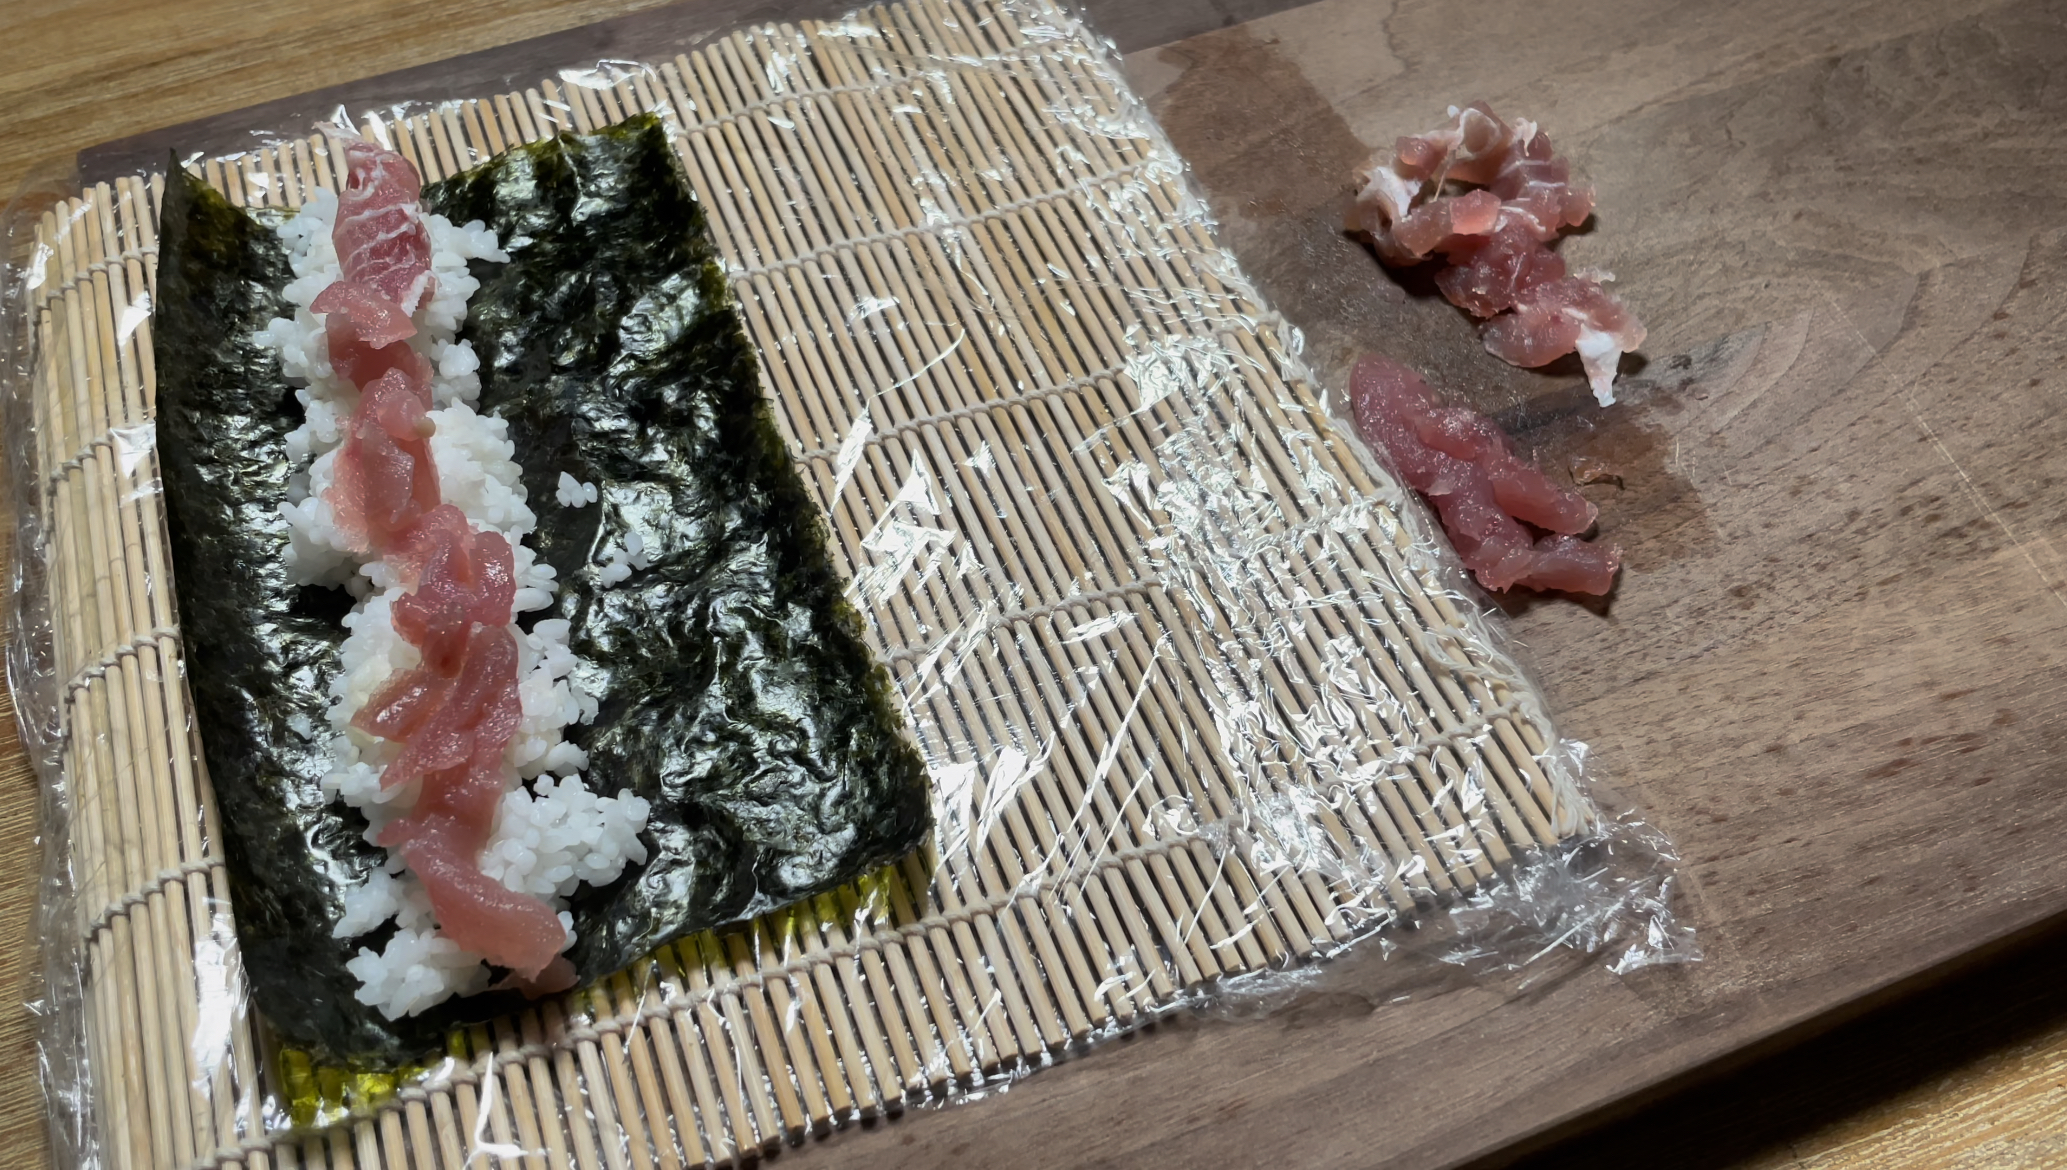 How to Make Tuna Maki (Sushi Roll) – Sizzlefish